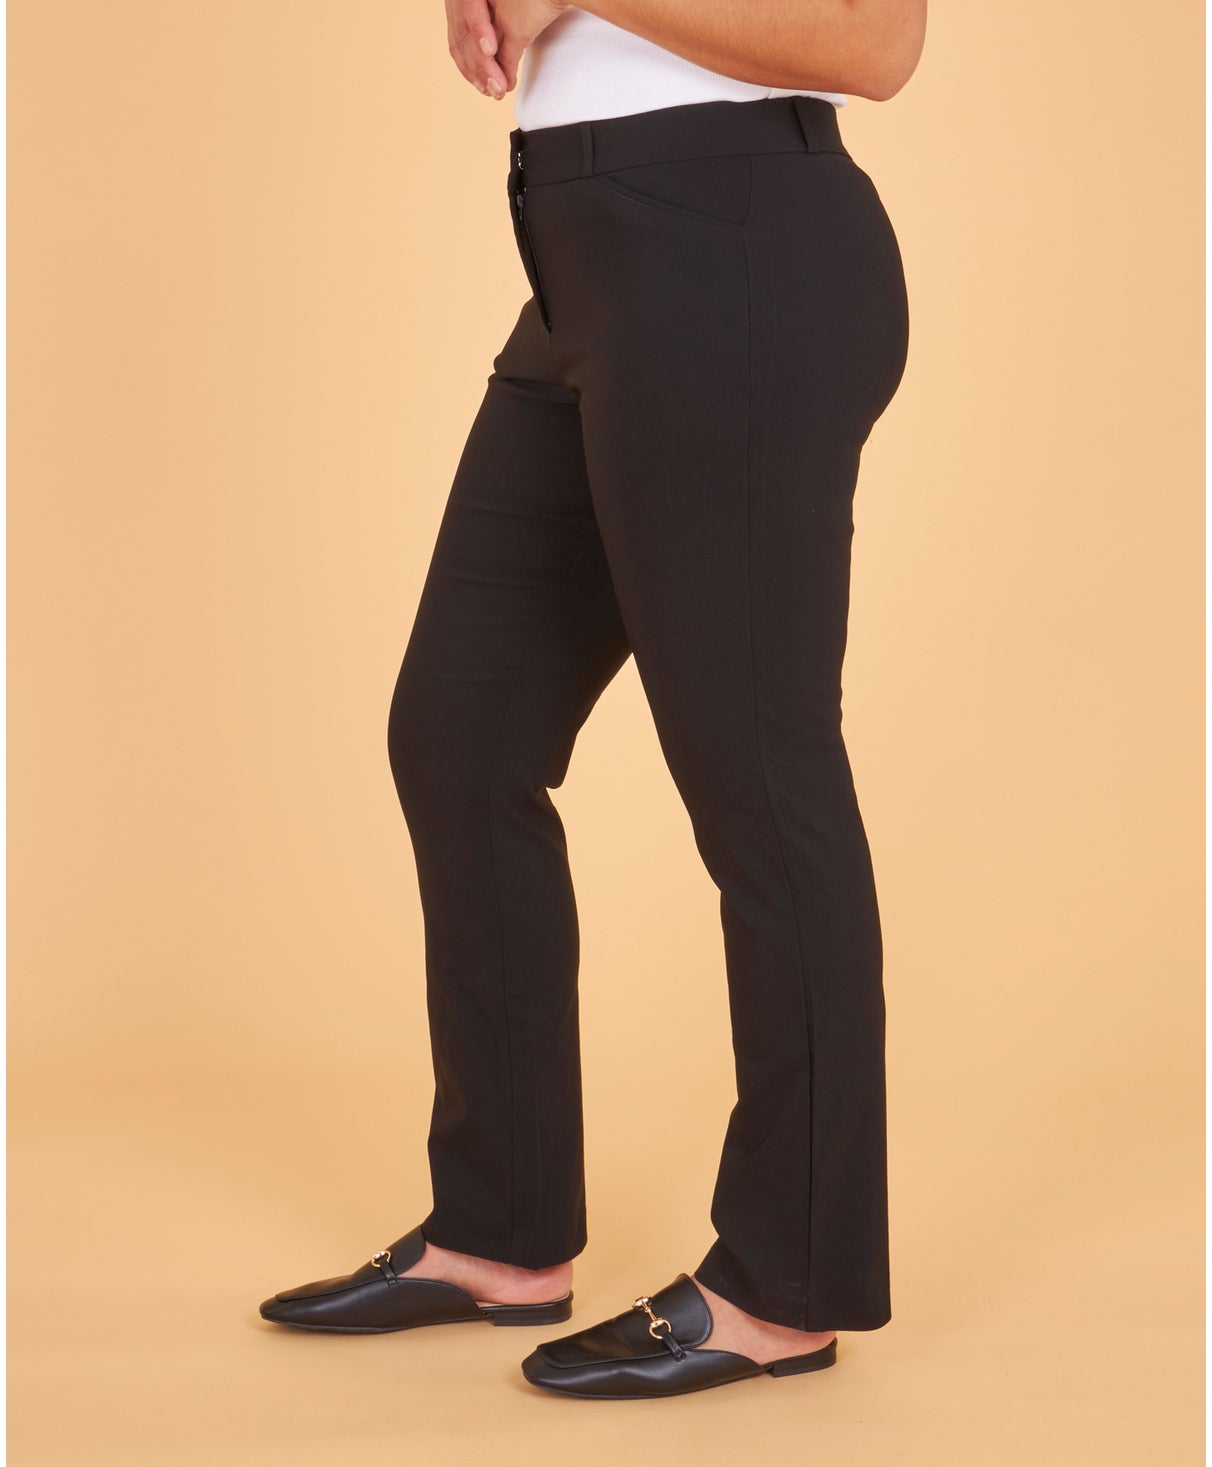 Women's Bootcut Bengaline Pants in Black Short